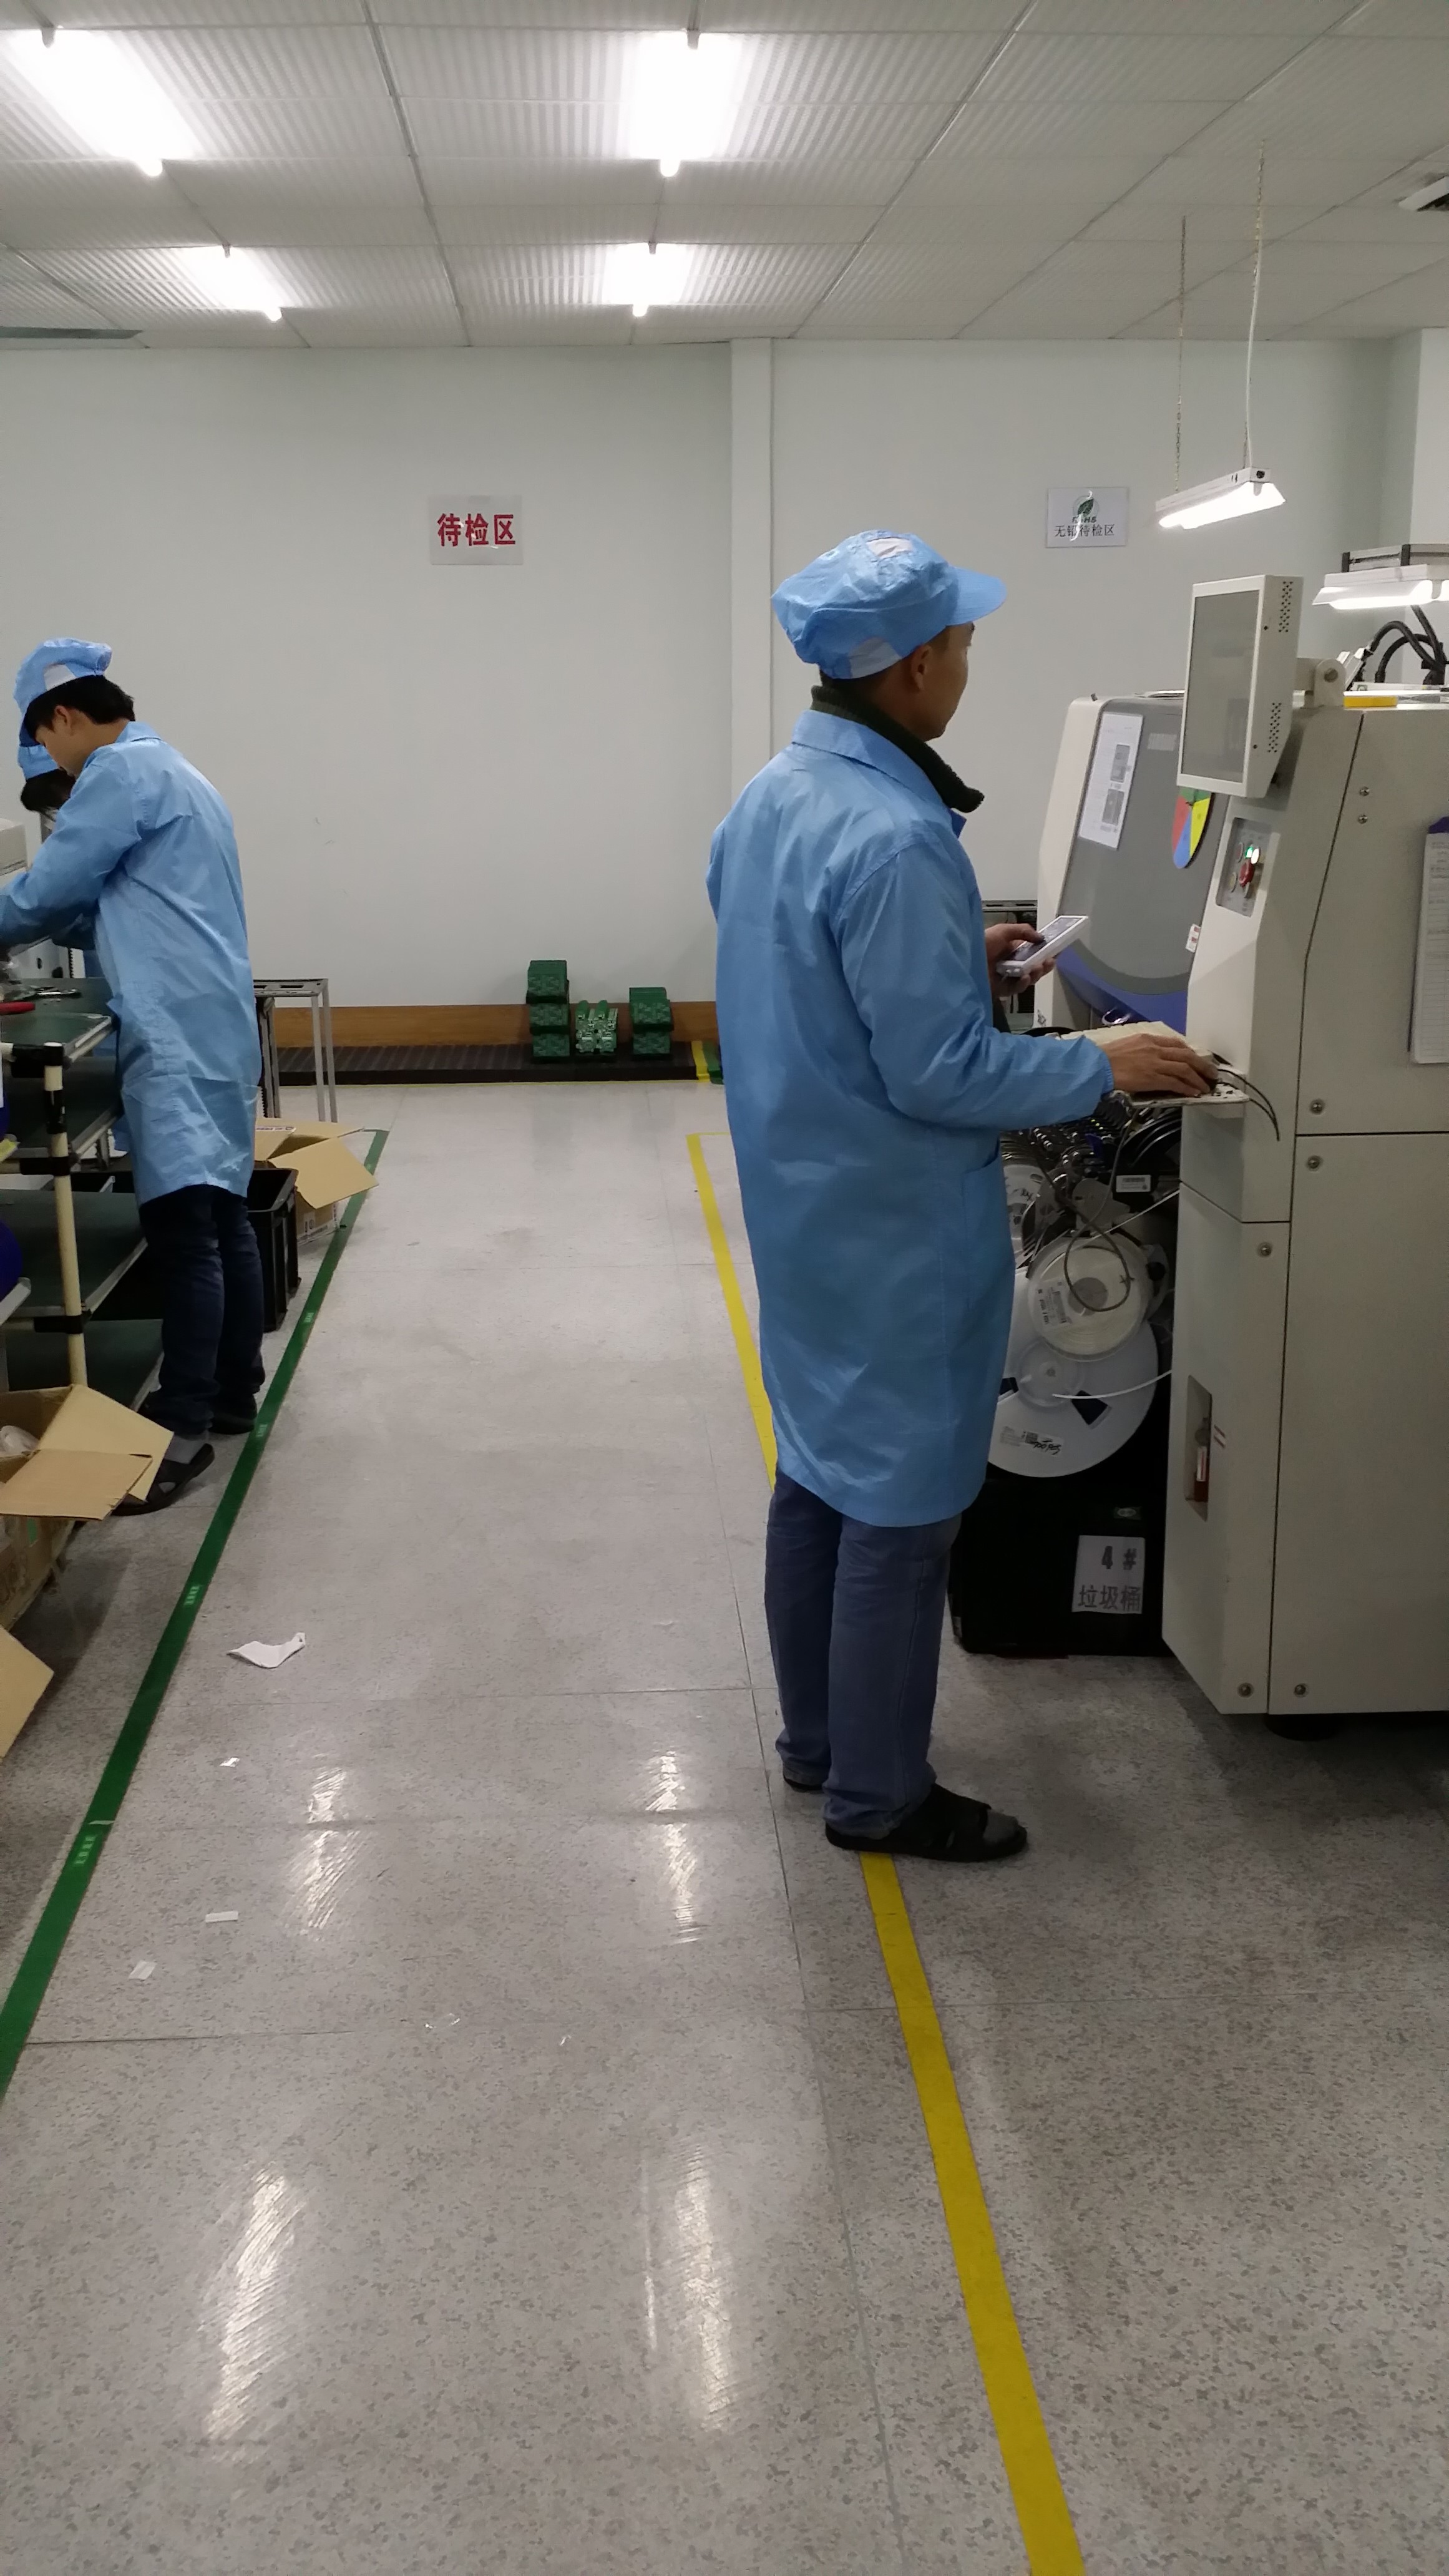 GZ TOPSHINE TECHNOLOGY LIMITED ligne de production en usine